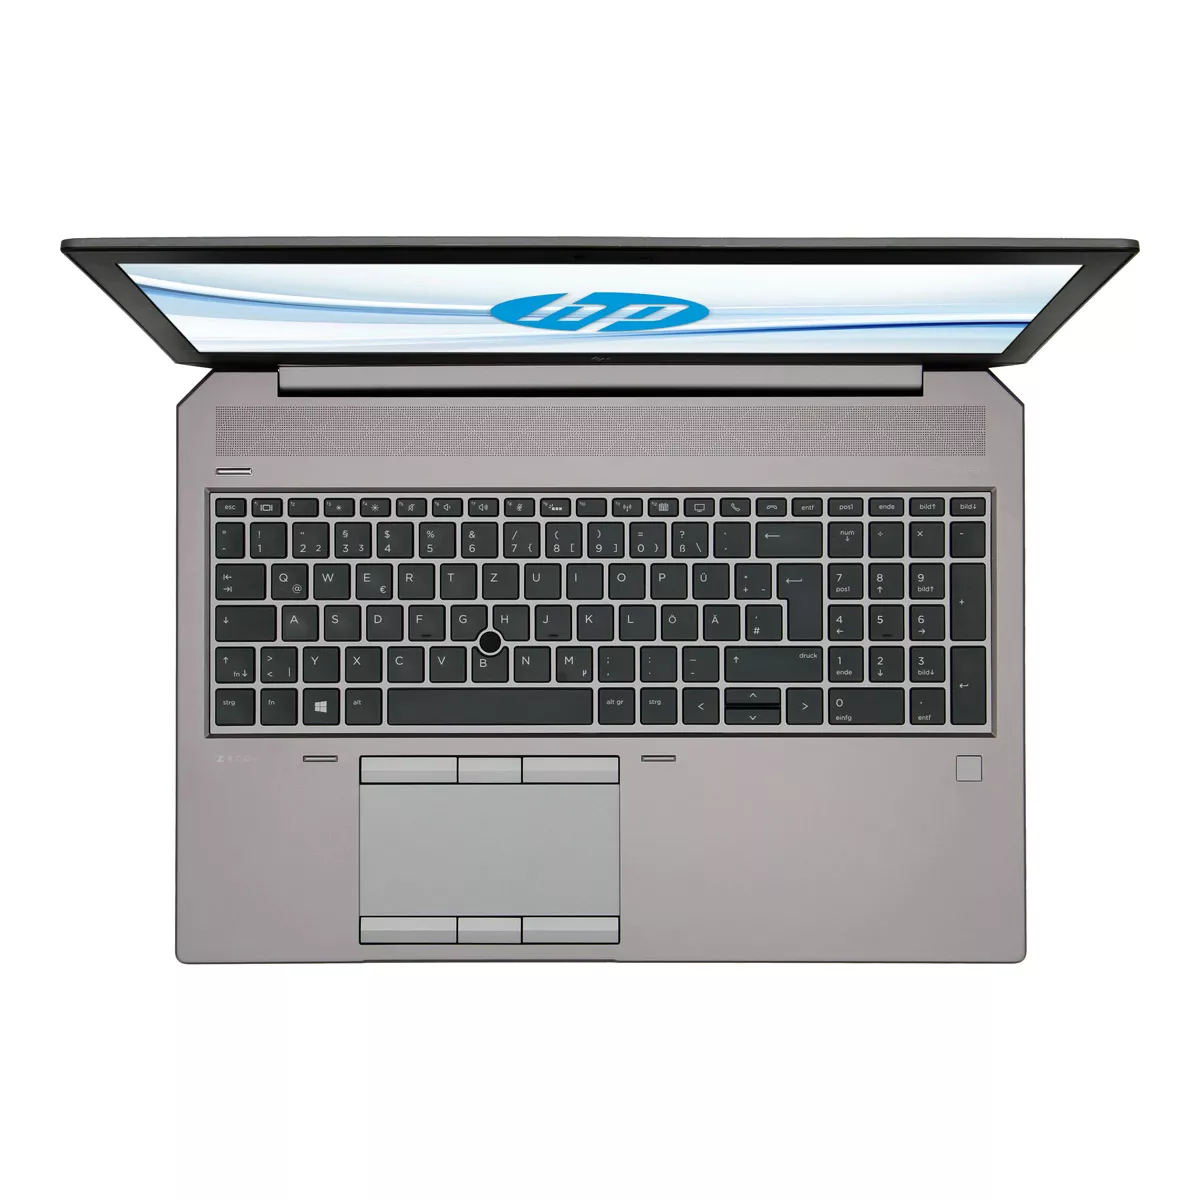 HP ZBook 15 G6 Core i7 9850H nVidia Quadro T1000M 32 GB 1 TB M.2 SSD A+